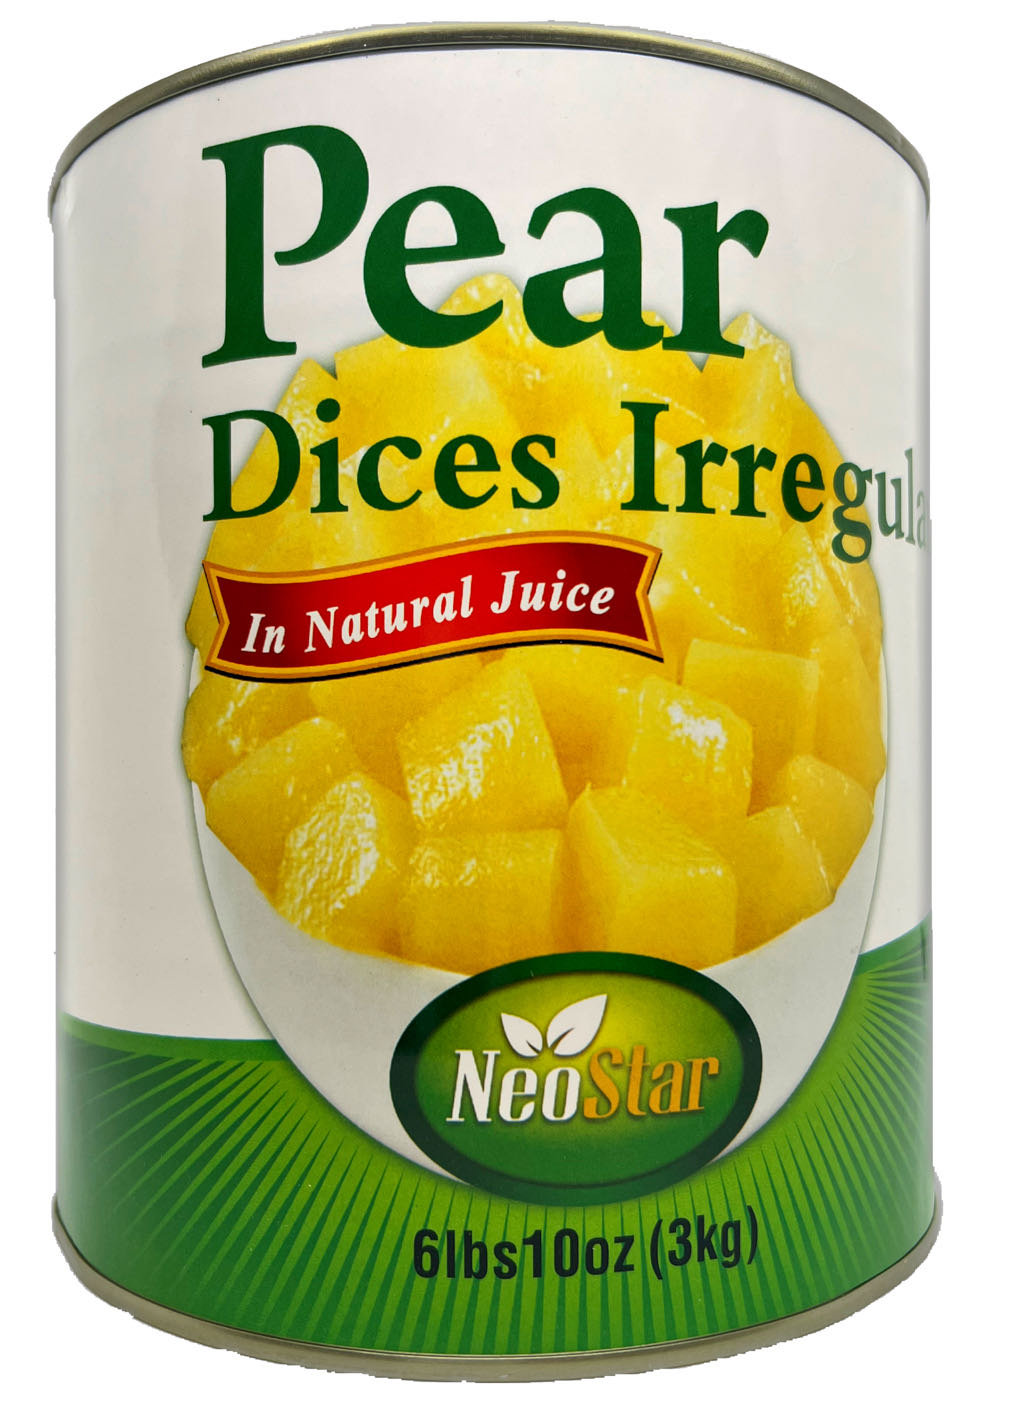 #10 (106oz) Pear Dices, Irregular, Natural Juice